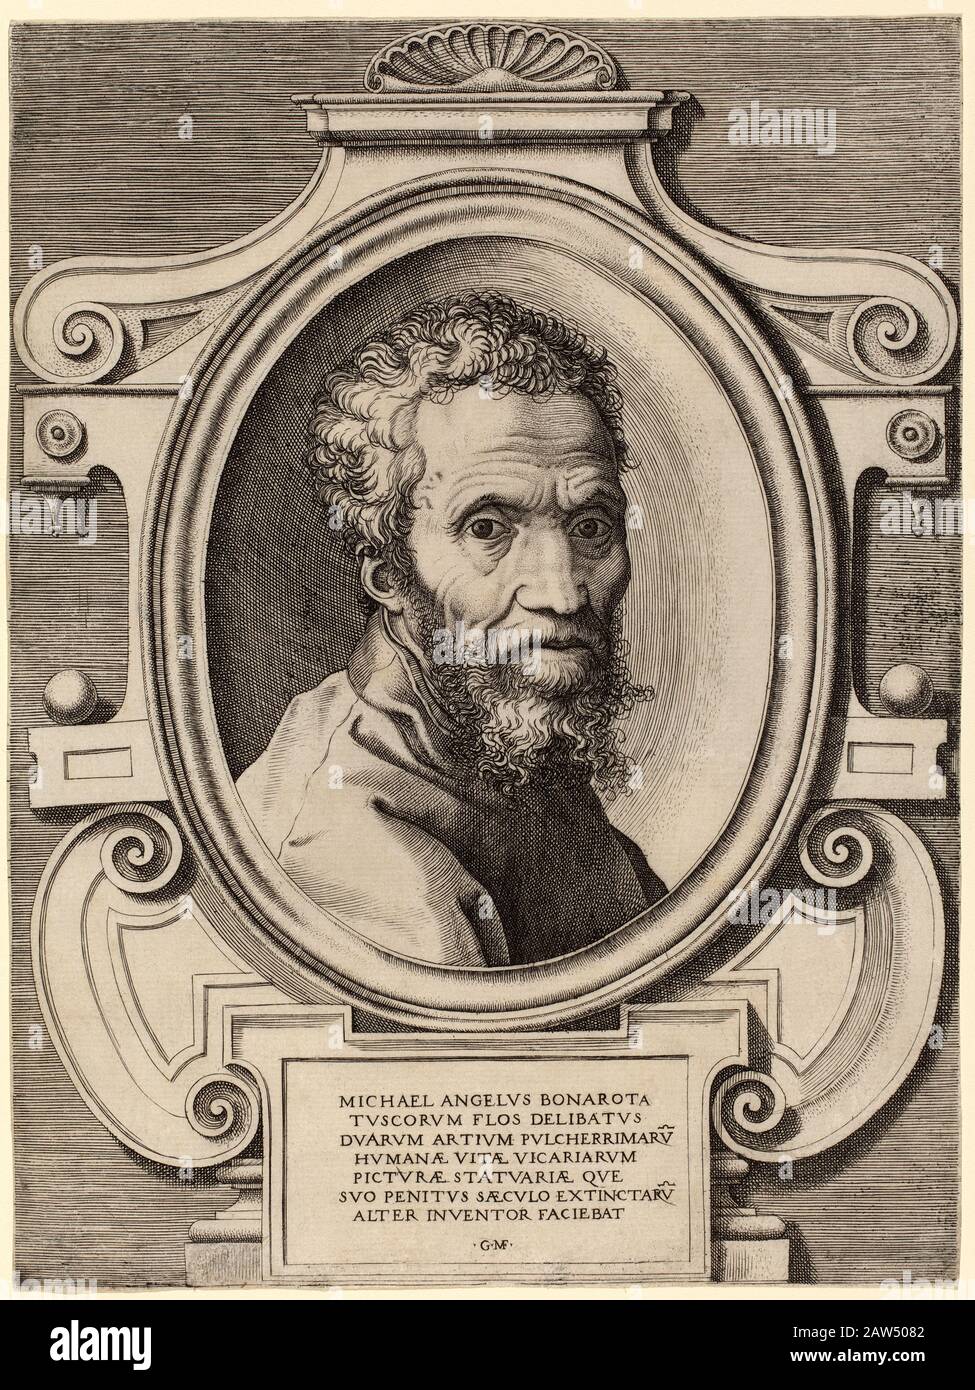 1564 Ca, ITALIEN: Der italienische Maler der Renaissance und Schulpteur MICHELANGELO BONARROTI (* 1475 in Rom; † 1564 in Italien). Porträtgravur von Giorgio Ghisi ( alias Gio Stockfoto